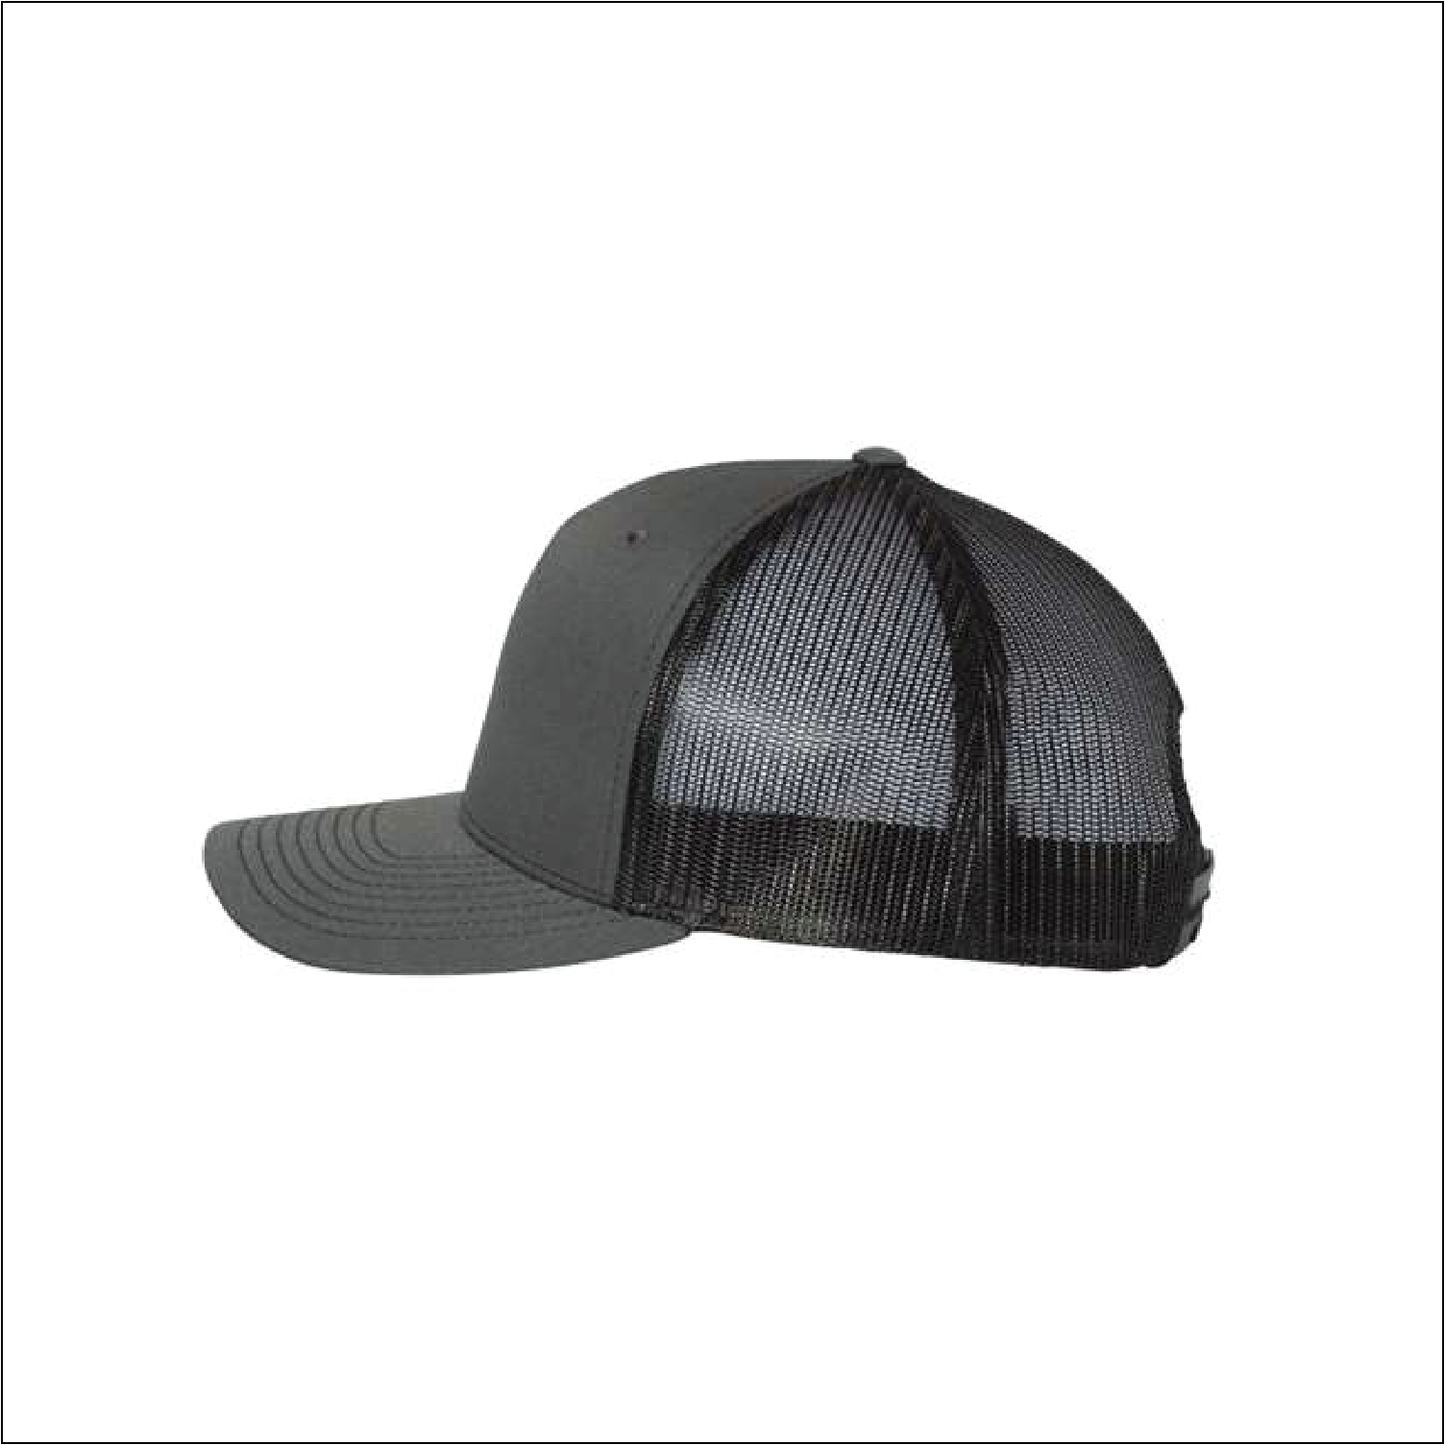 Lacrosse Trucker Hat